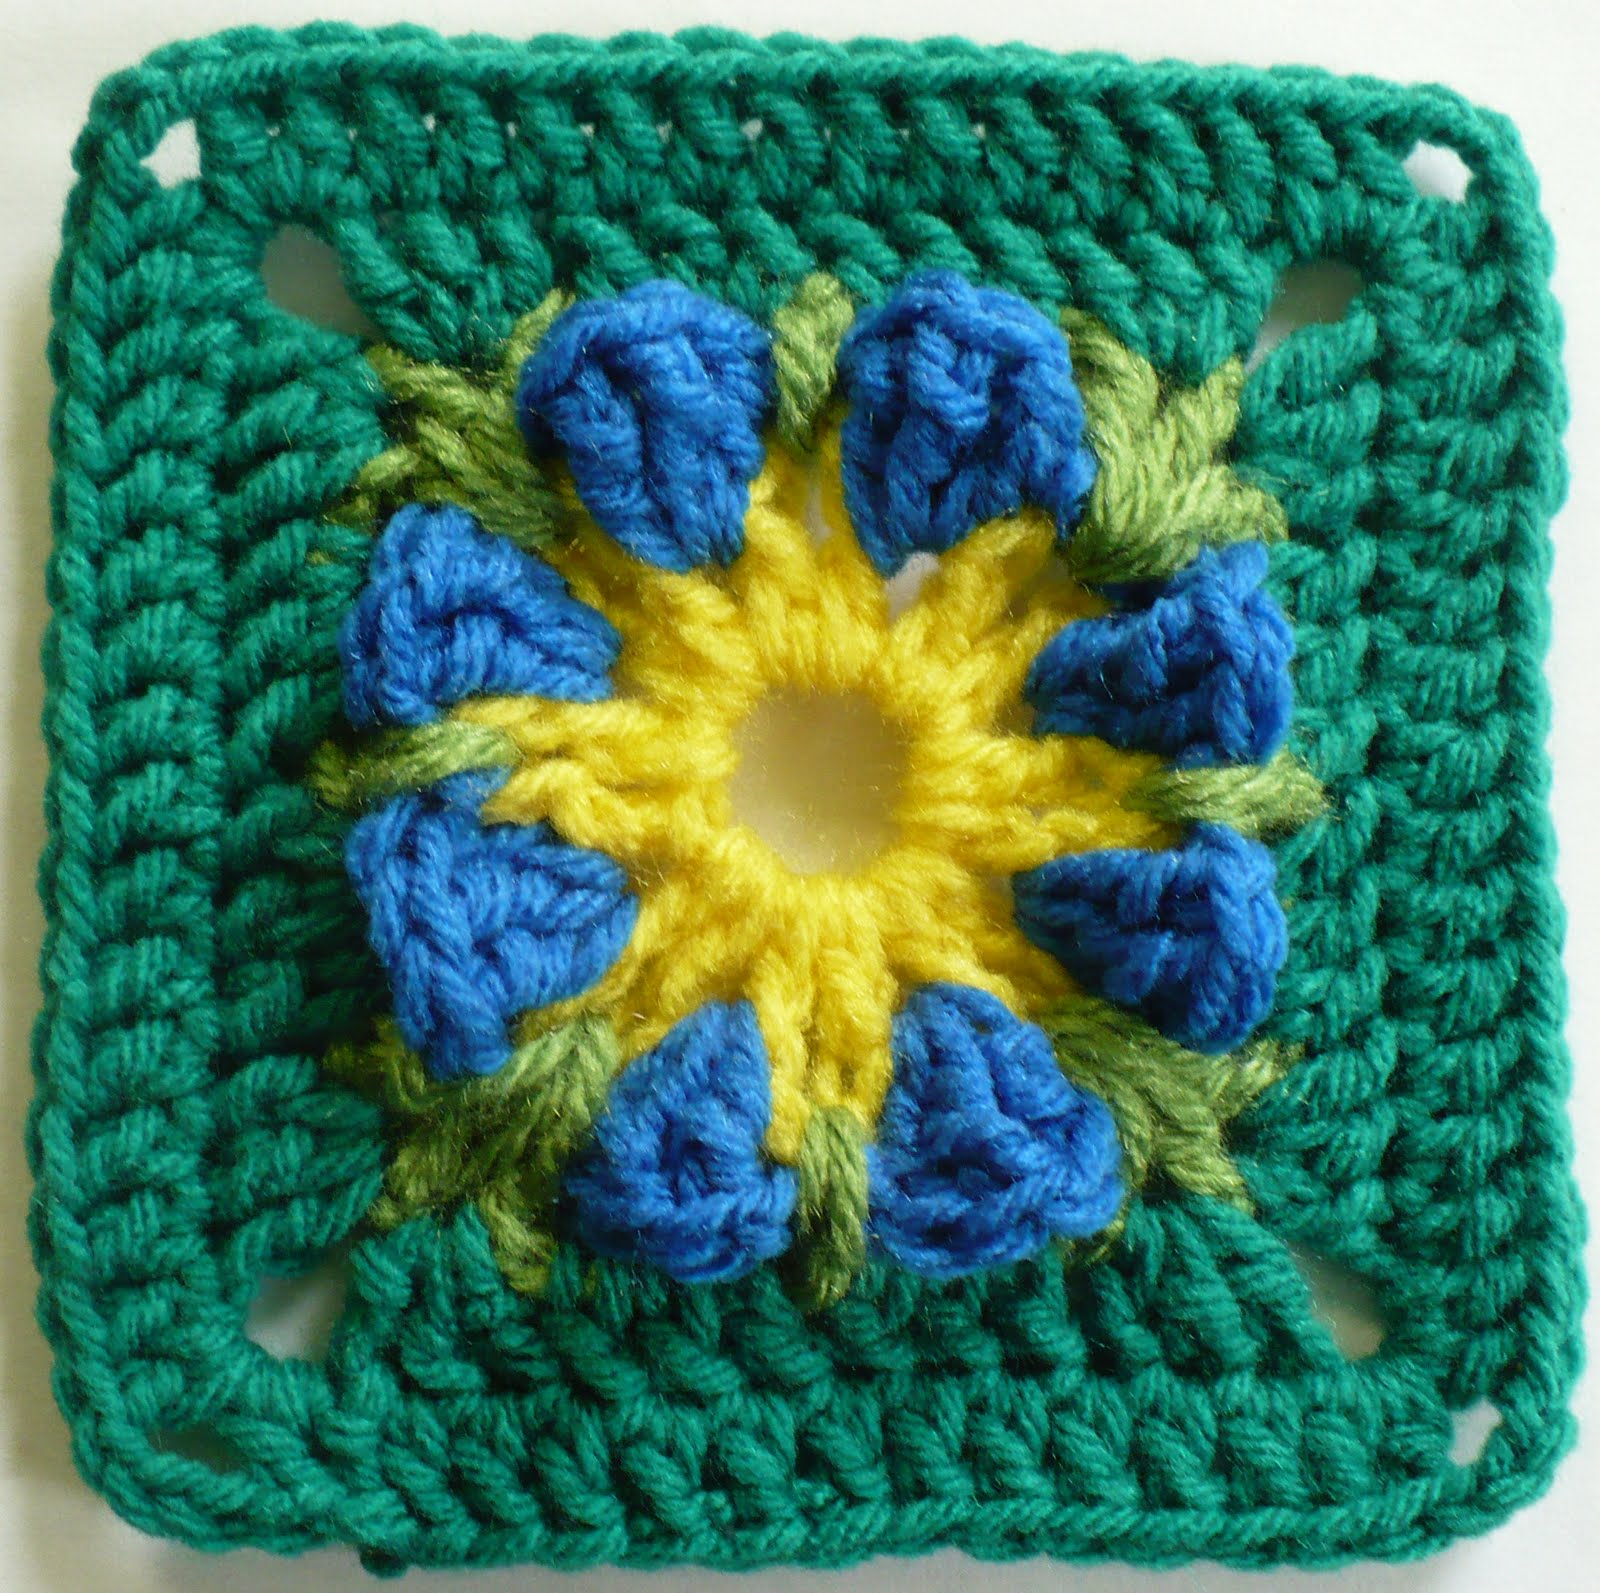 Cross Afghan Square Crochet Pattern - Free Crochet Pattern